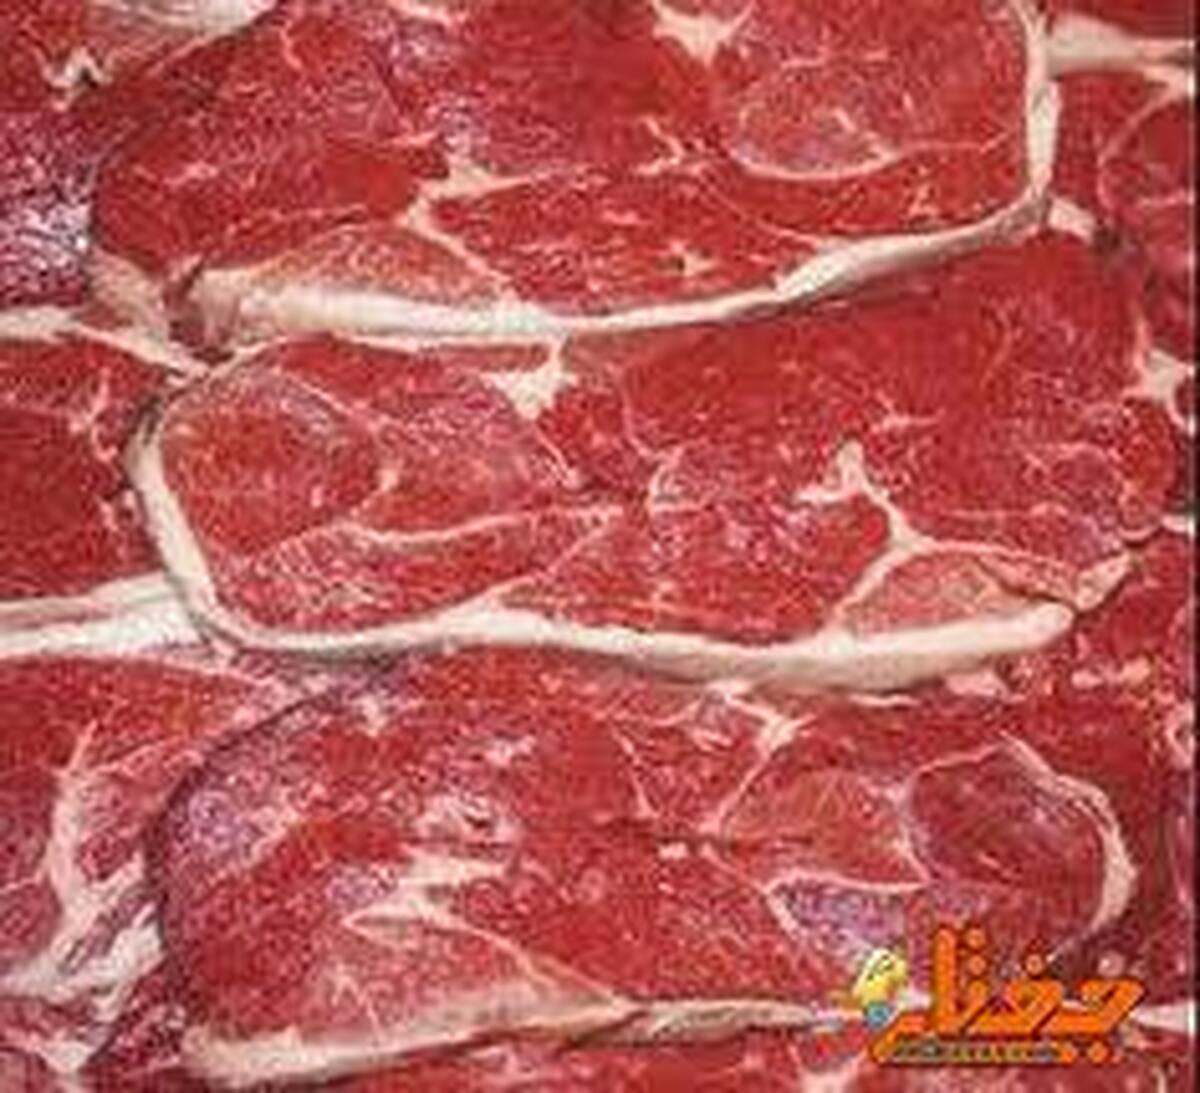 نابودسازی بیش از ۱.۵ تن گوشت آلوده در جغتای خراسان رضوی